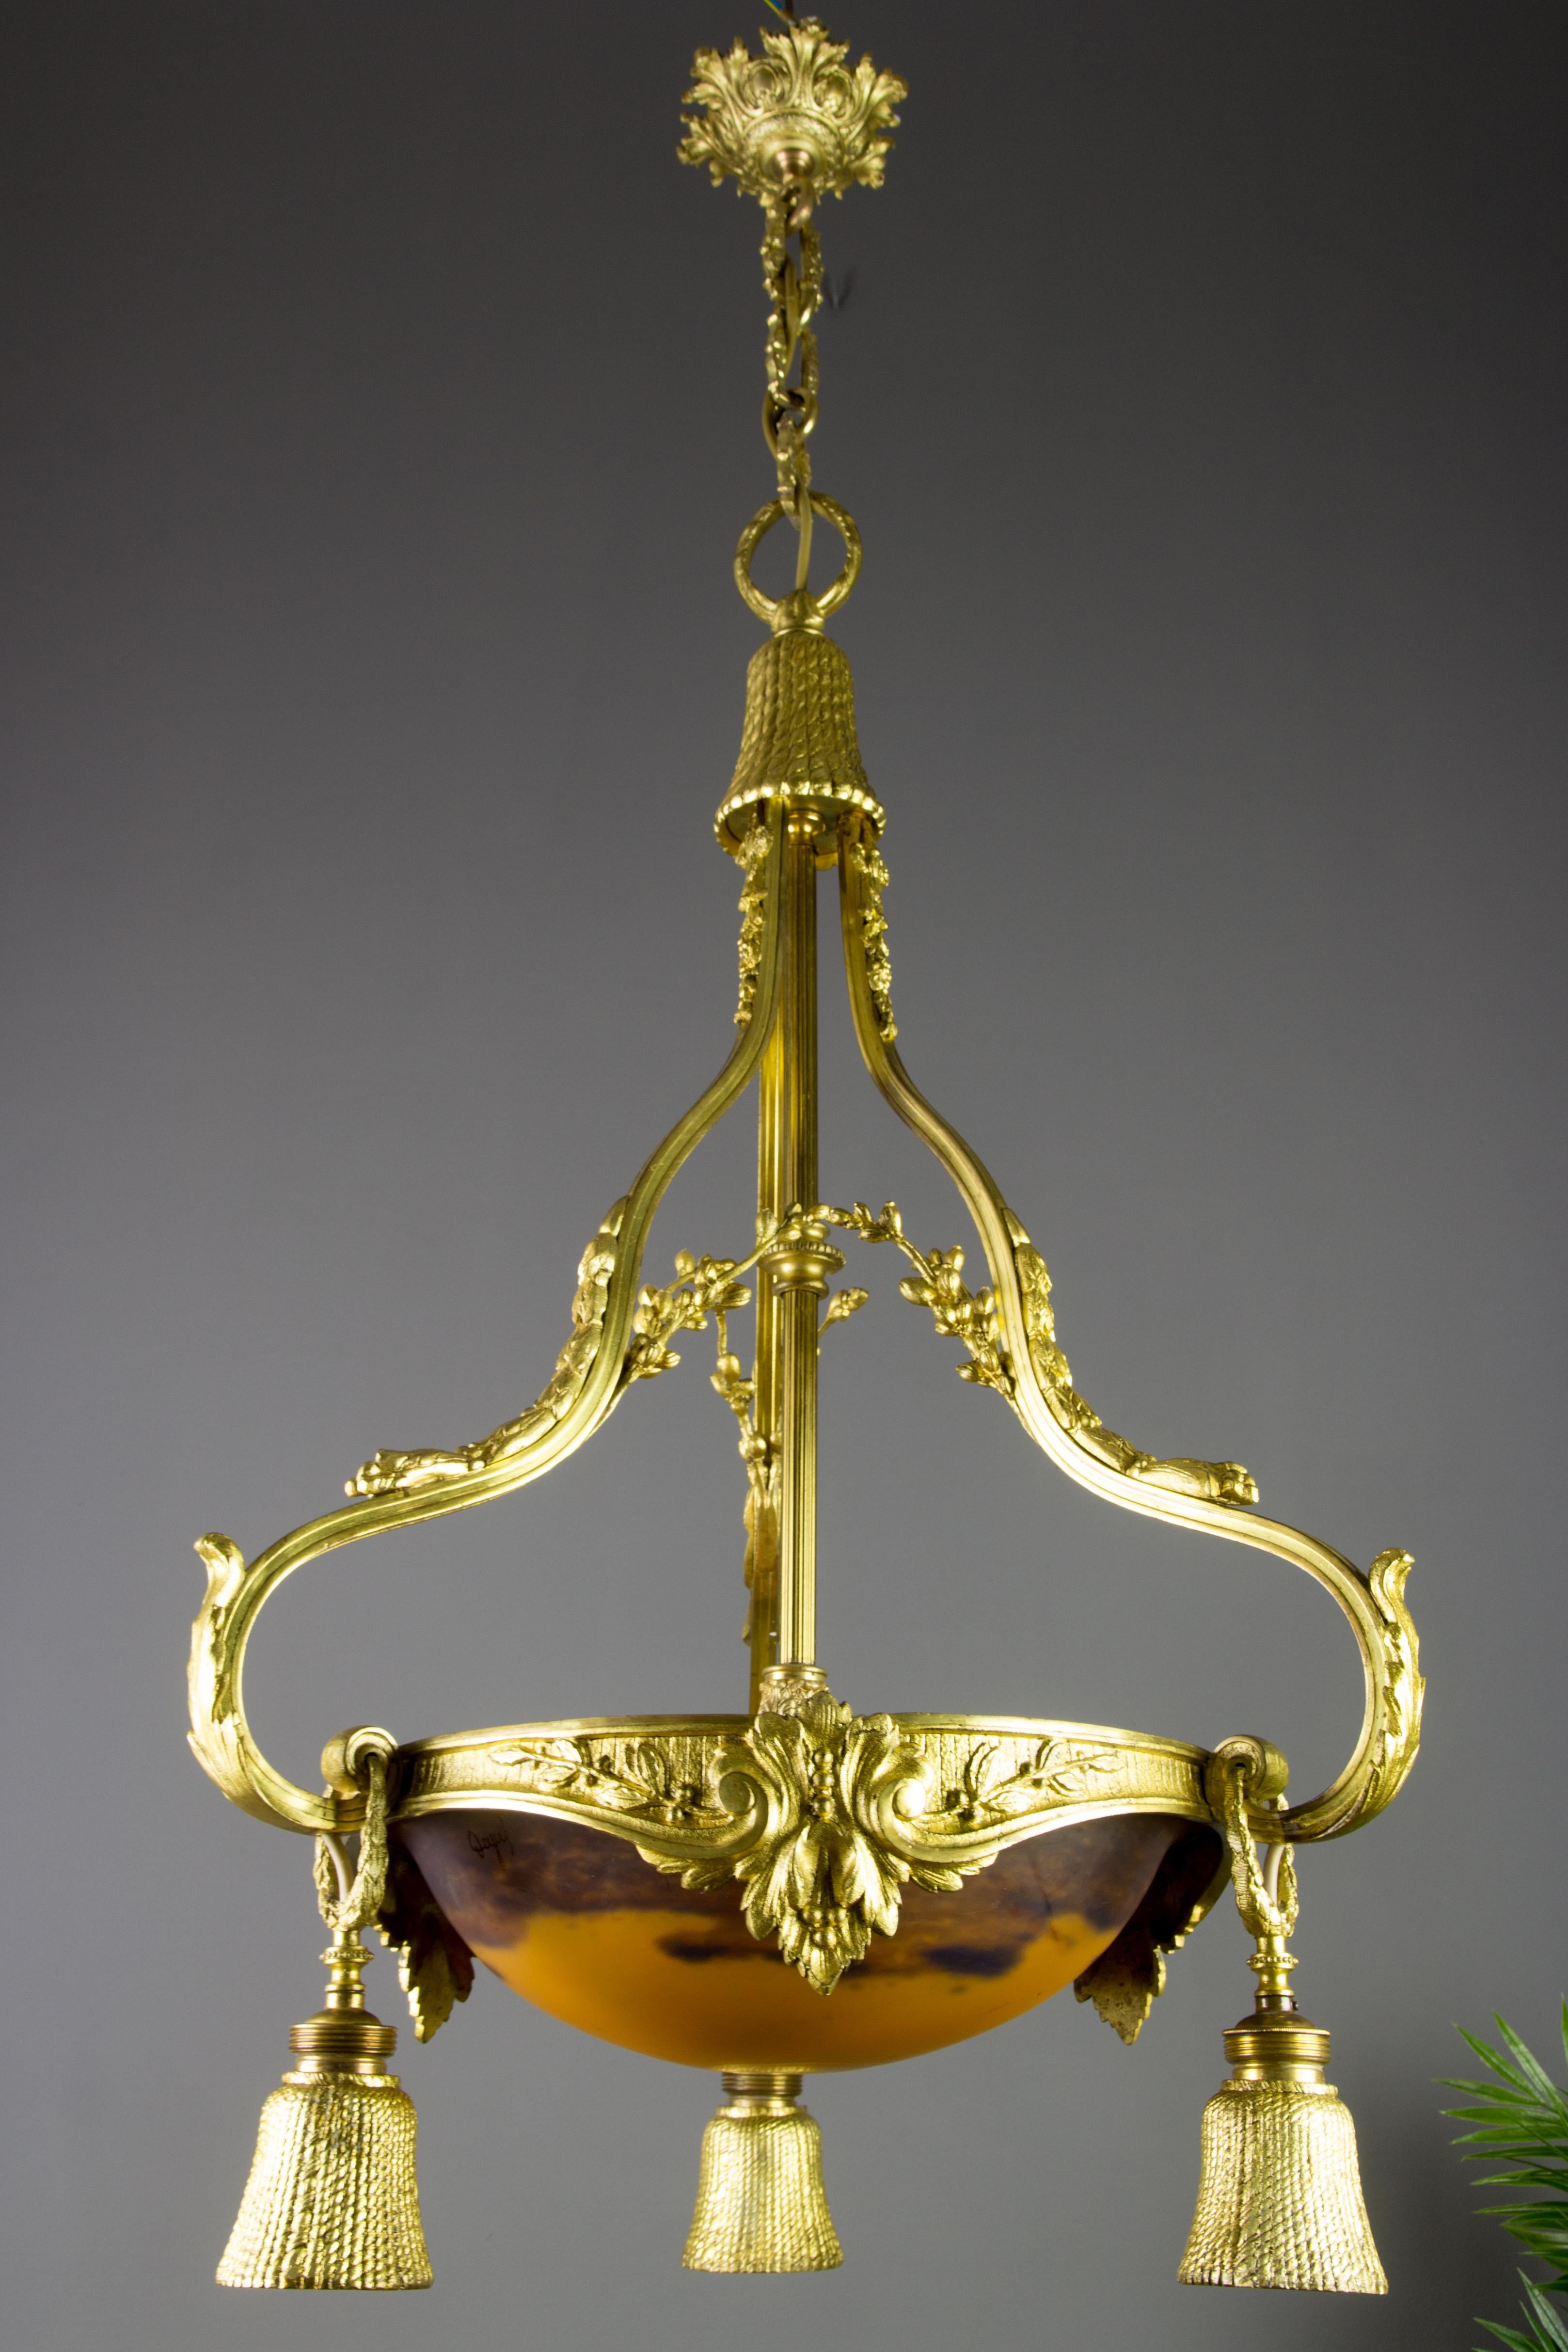 Lustre à quatre lumières en bronze doré et verre de style Louis XVI par Degué 
Lustre à quatre lumières en bronze doré de style Louis XVI, décoré de feuilles et de branches d'acanthe. Ce lustre ancien comporte trois cache-prises en bronze en forme